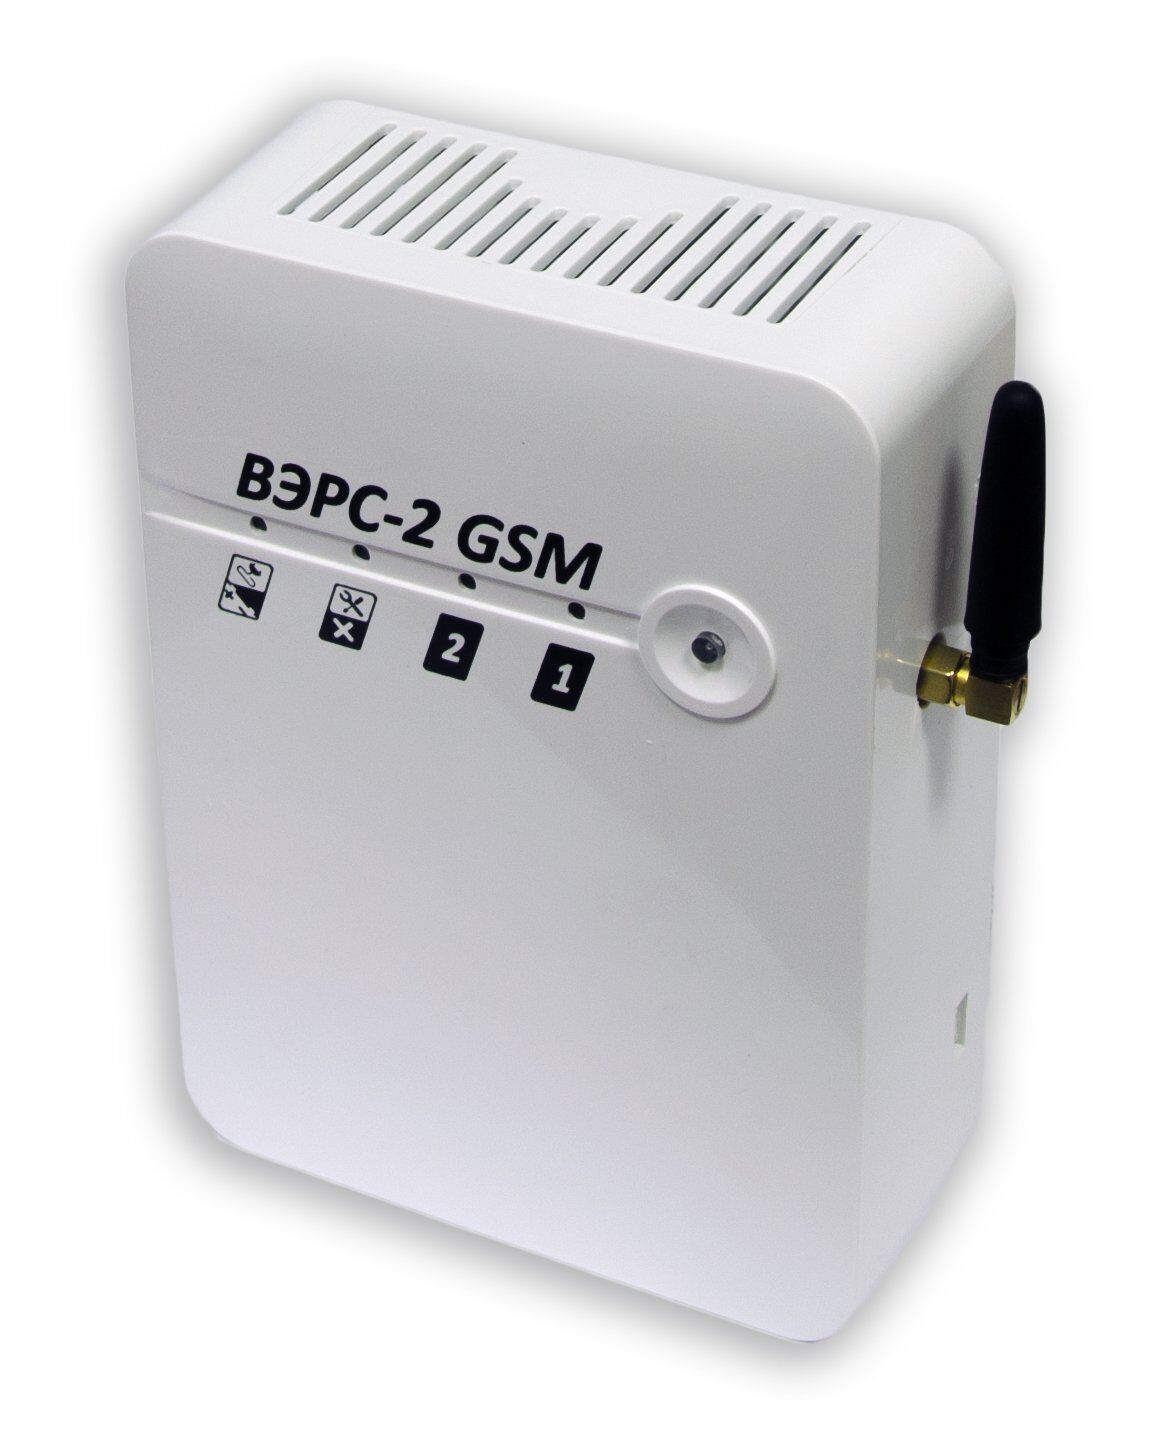 ВЭРС-2 GSM, устройство оконечное объектовое приемно-контрольное с GSM коммуникатором